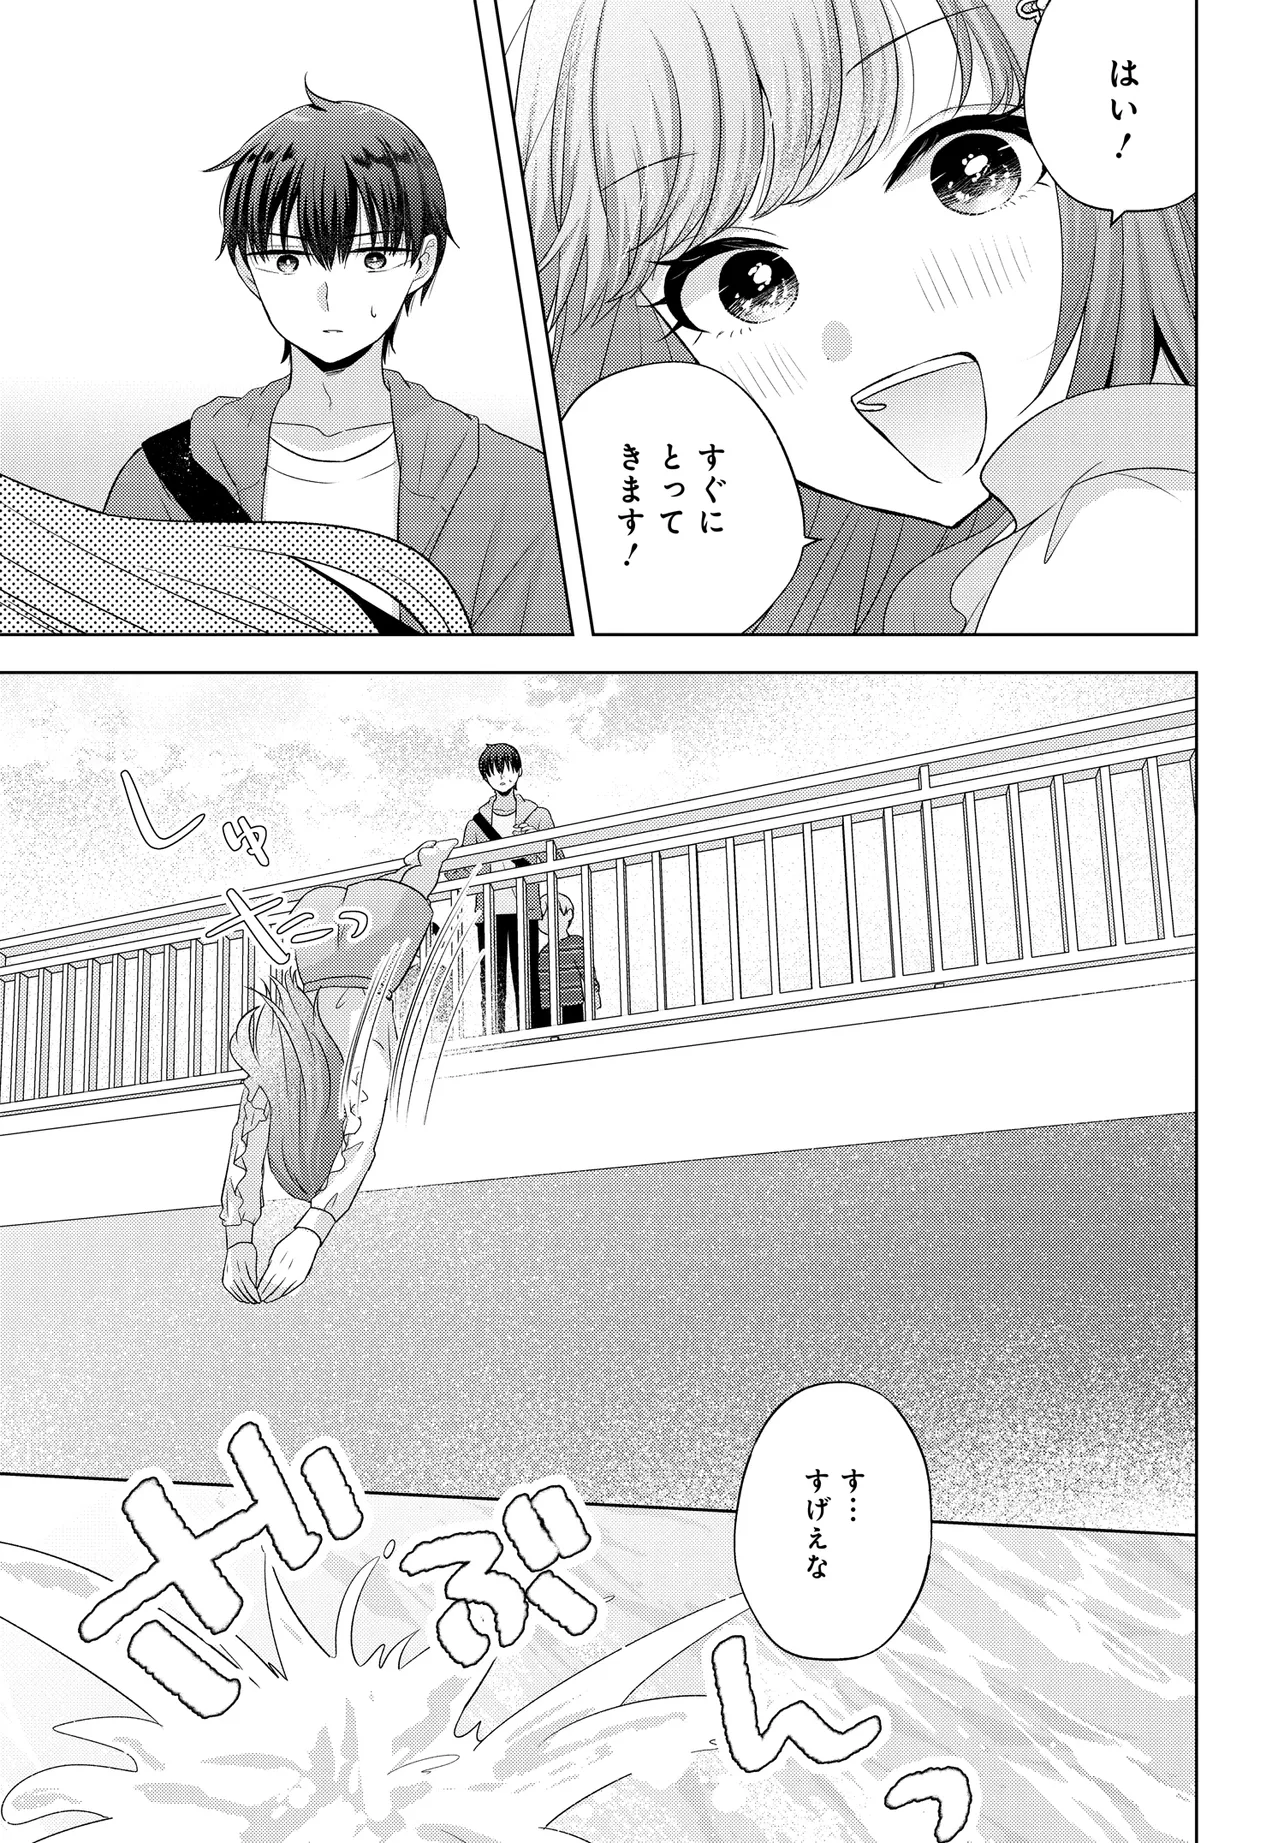 Suufun Go no Mirai ga Wakaru you ni Natta kedo, Onnagokoro wa Wakaranai. - Chapter 1 - Page 25